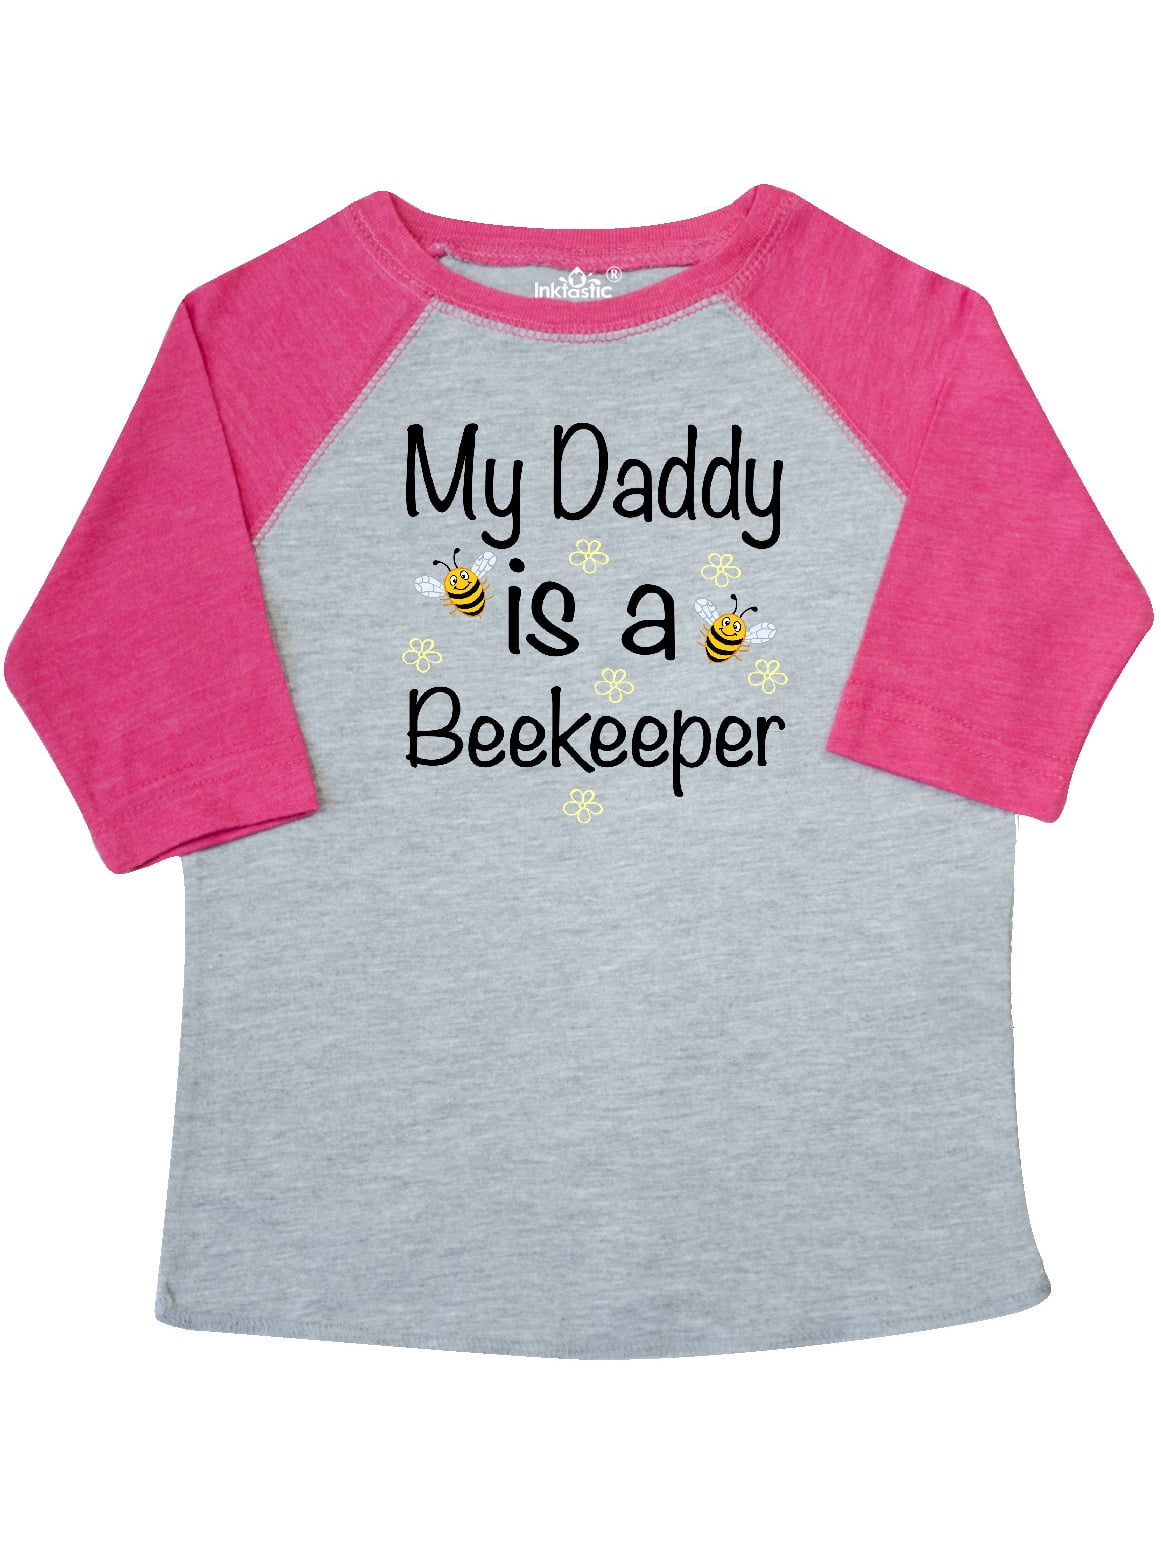 Beekeeper T-shirts Mens Funny Cool Novelty Beekeeping Joke Slogan Gifts Presents